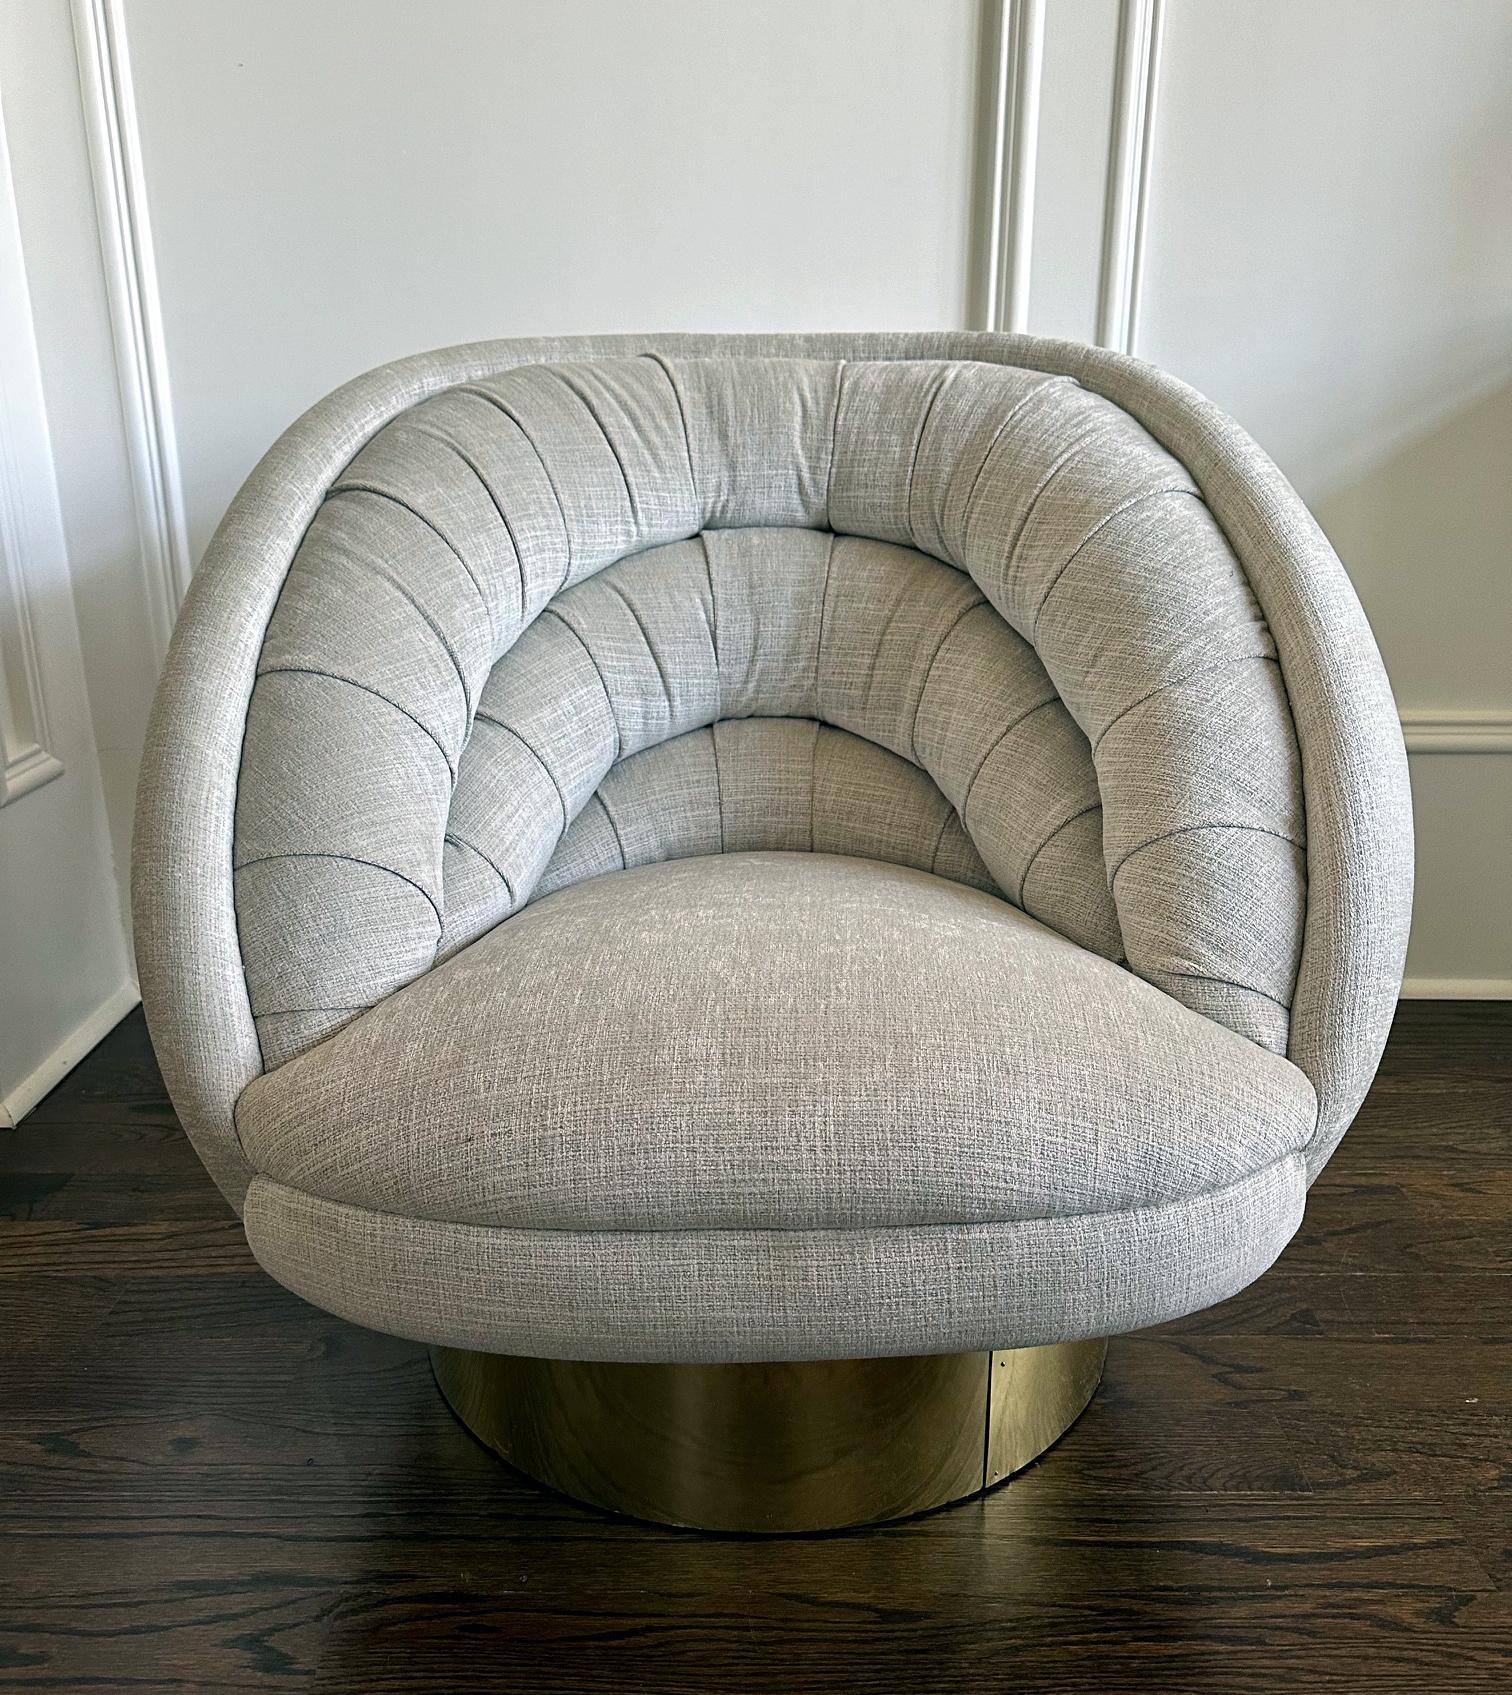 Une chaise longue pivotante glamour conçue et fabriquée par Vladimir Kagan (1927-2016) vers les années 1970-80. Connu sous le nom de chaise Ellipse ou Crescent, ce modèle a été conçu par Vladimir Kagan en 1976. La chaise proposée est dotée d'un